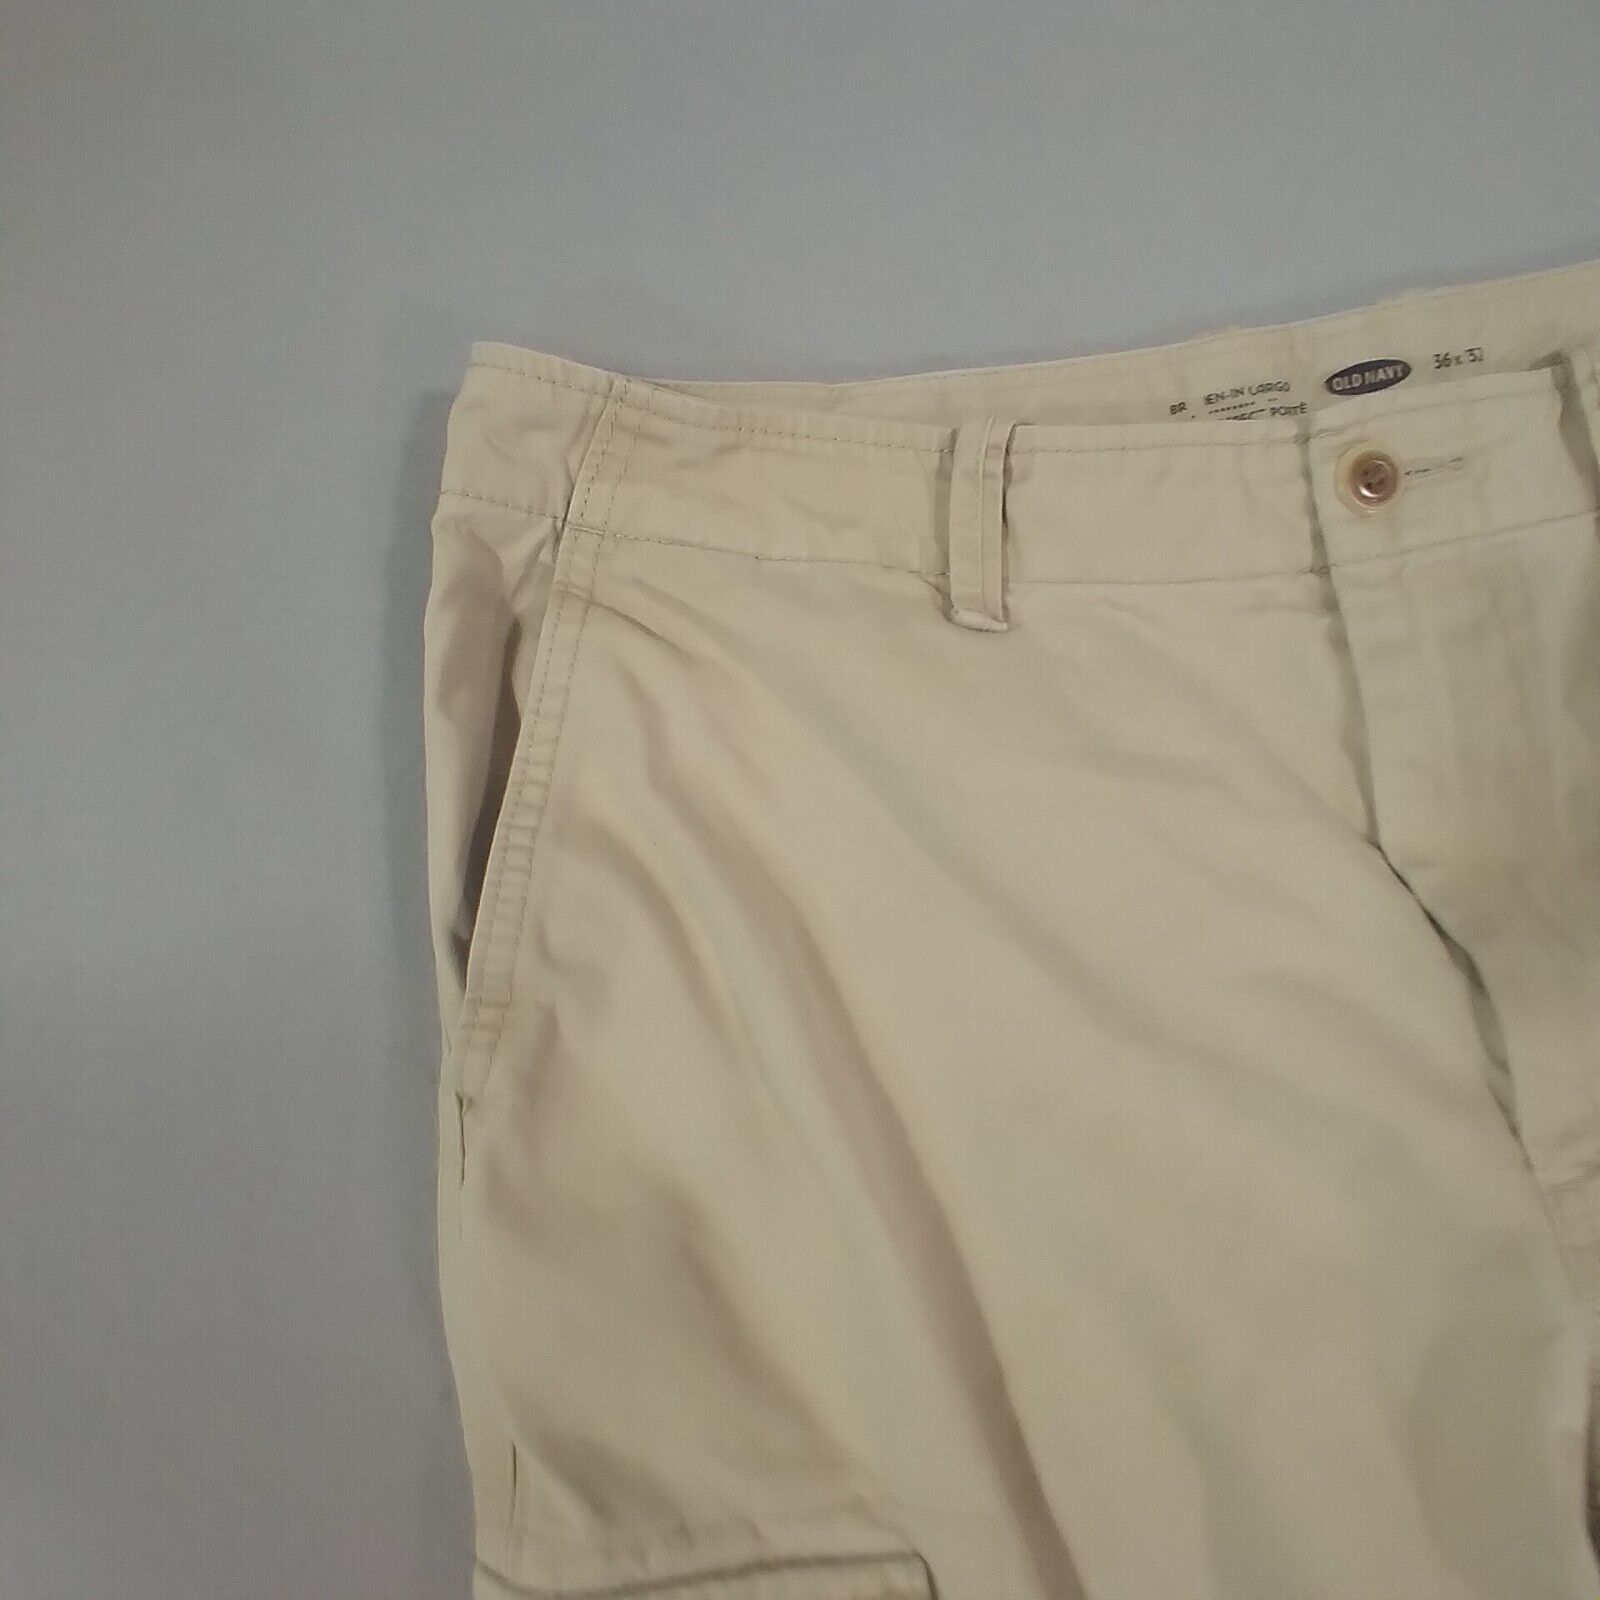 Old Navy broken in cargo pants mens 36 x 30 khaki tan beige top outdoor ...